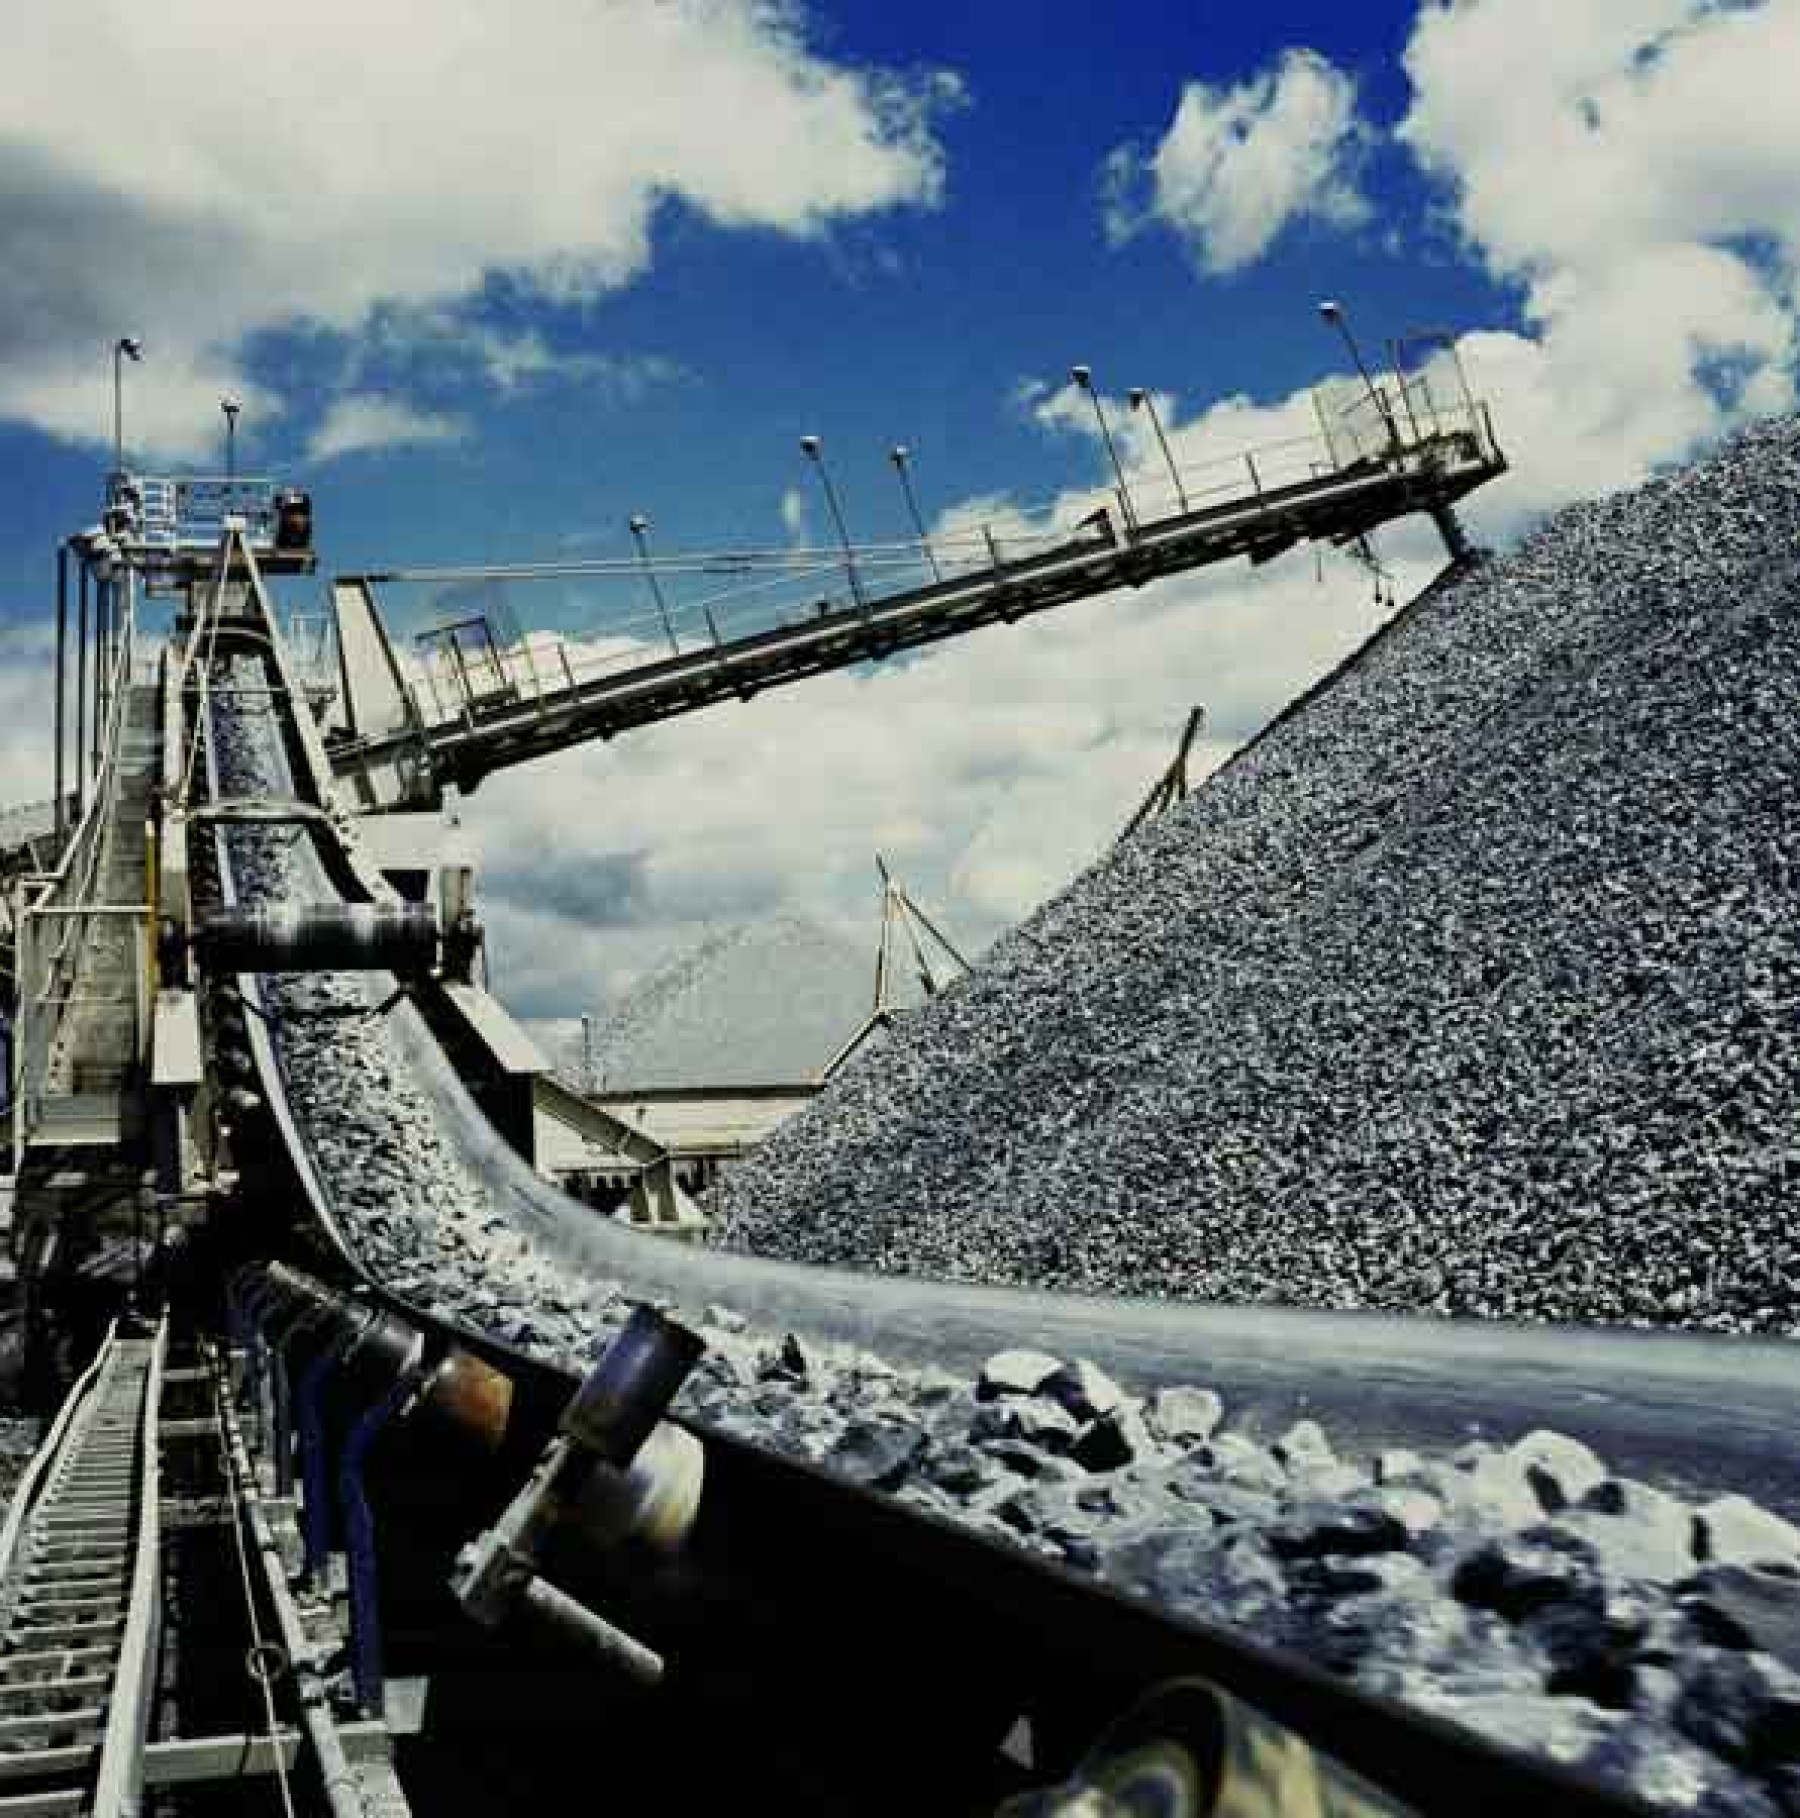 Алтайское минеральное сырье пока пользуется большим спросом на Украине